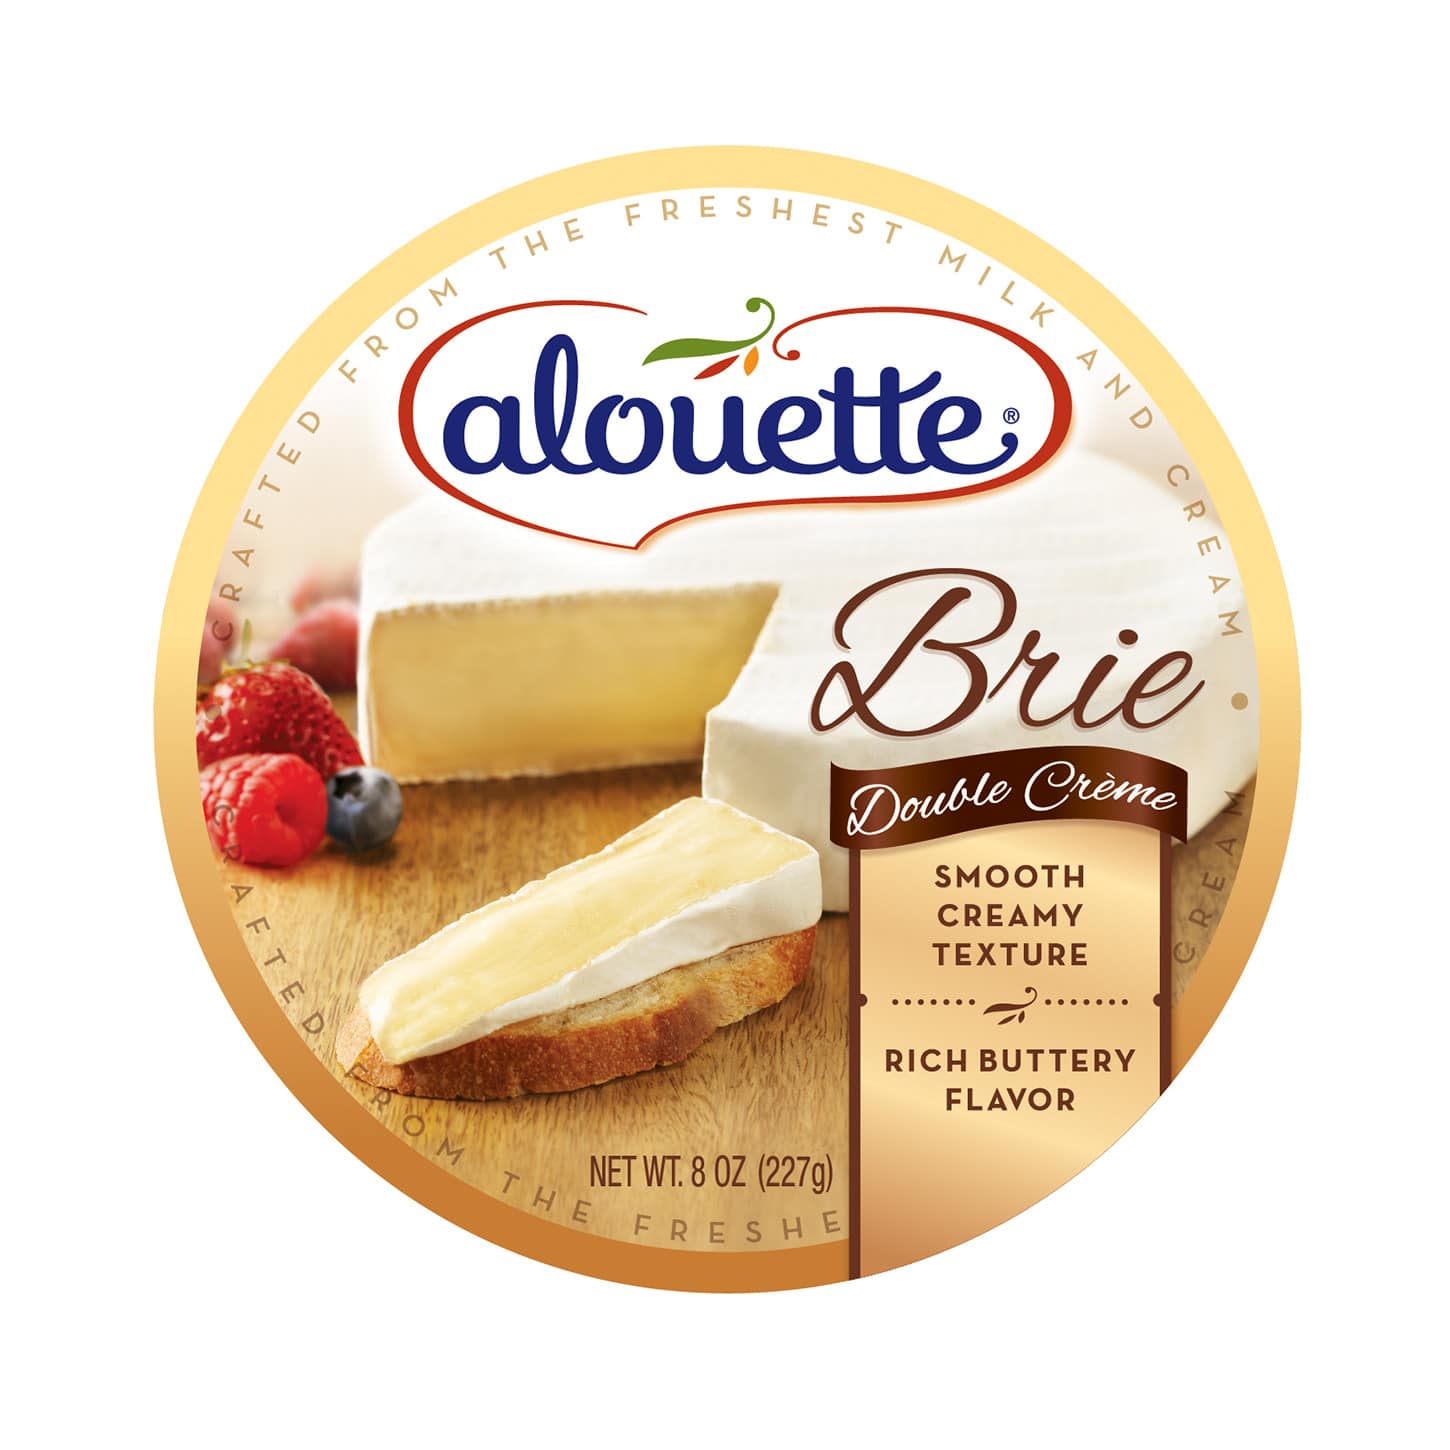 Alouette Brie Double crème 8oz packaging